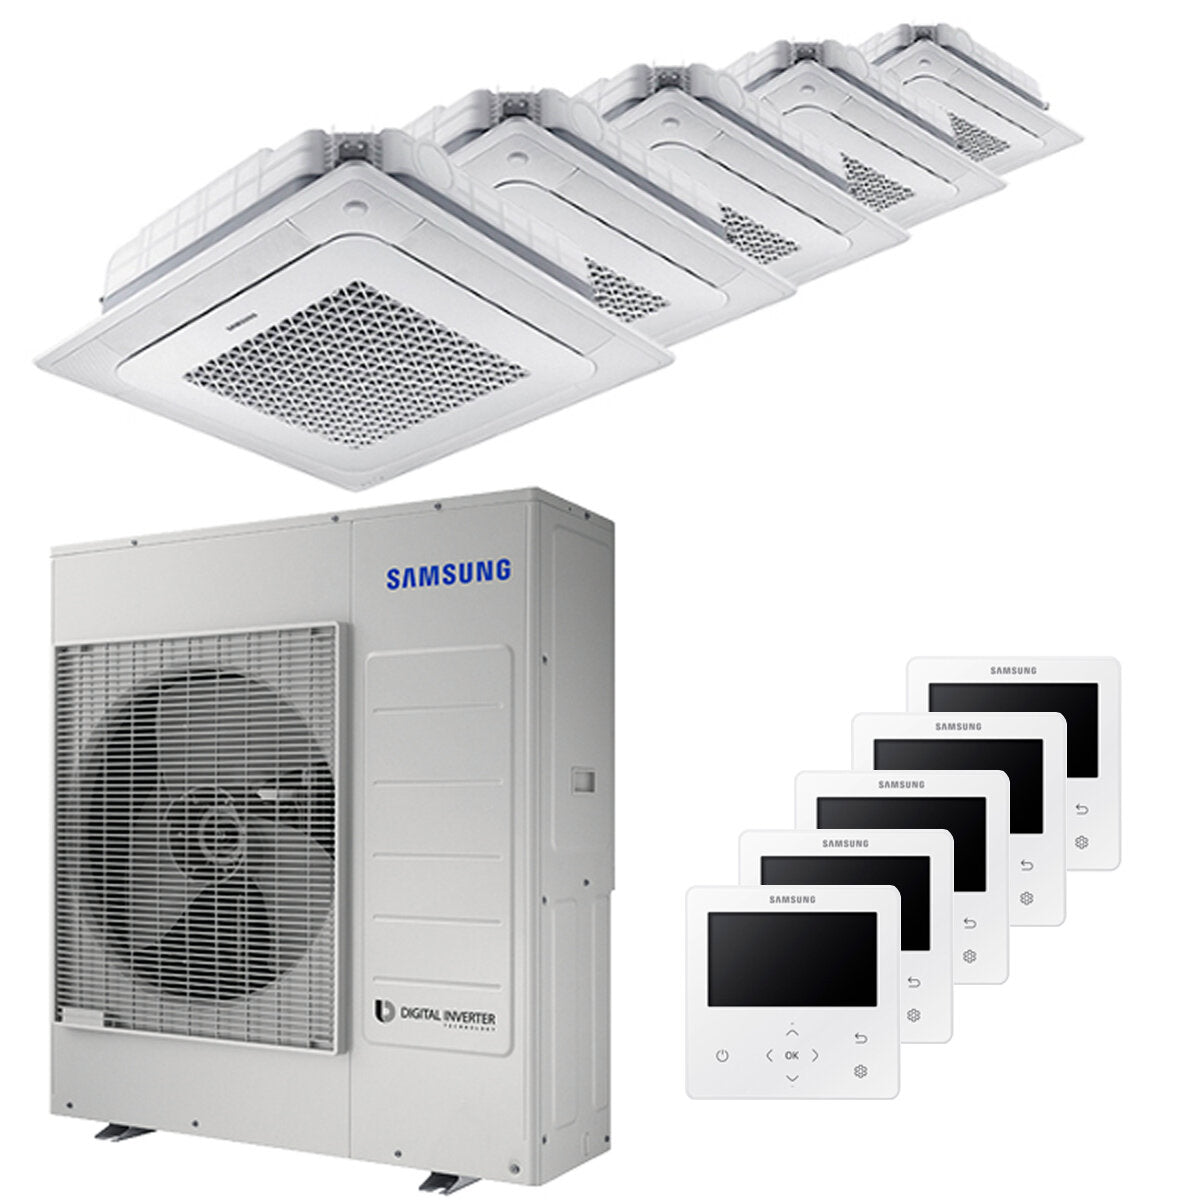 Samsung Air conditioner Windfree 4-way penta split 9000 + 9000 + 9000 + 9000 + 9000 BTU inverter A ++ outdoor unit 10.0 kW